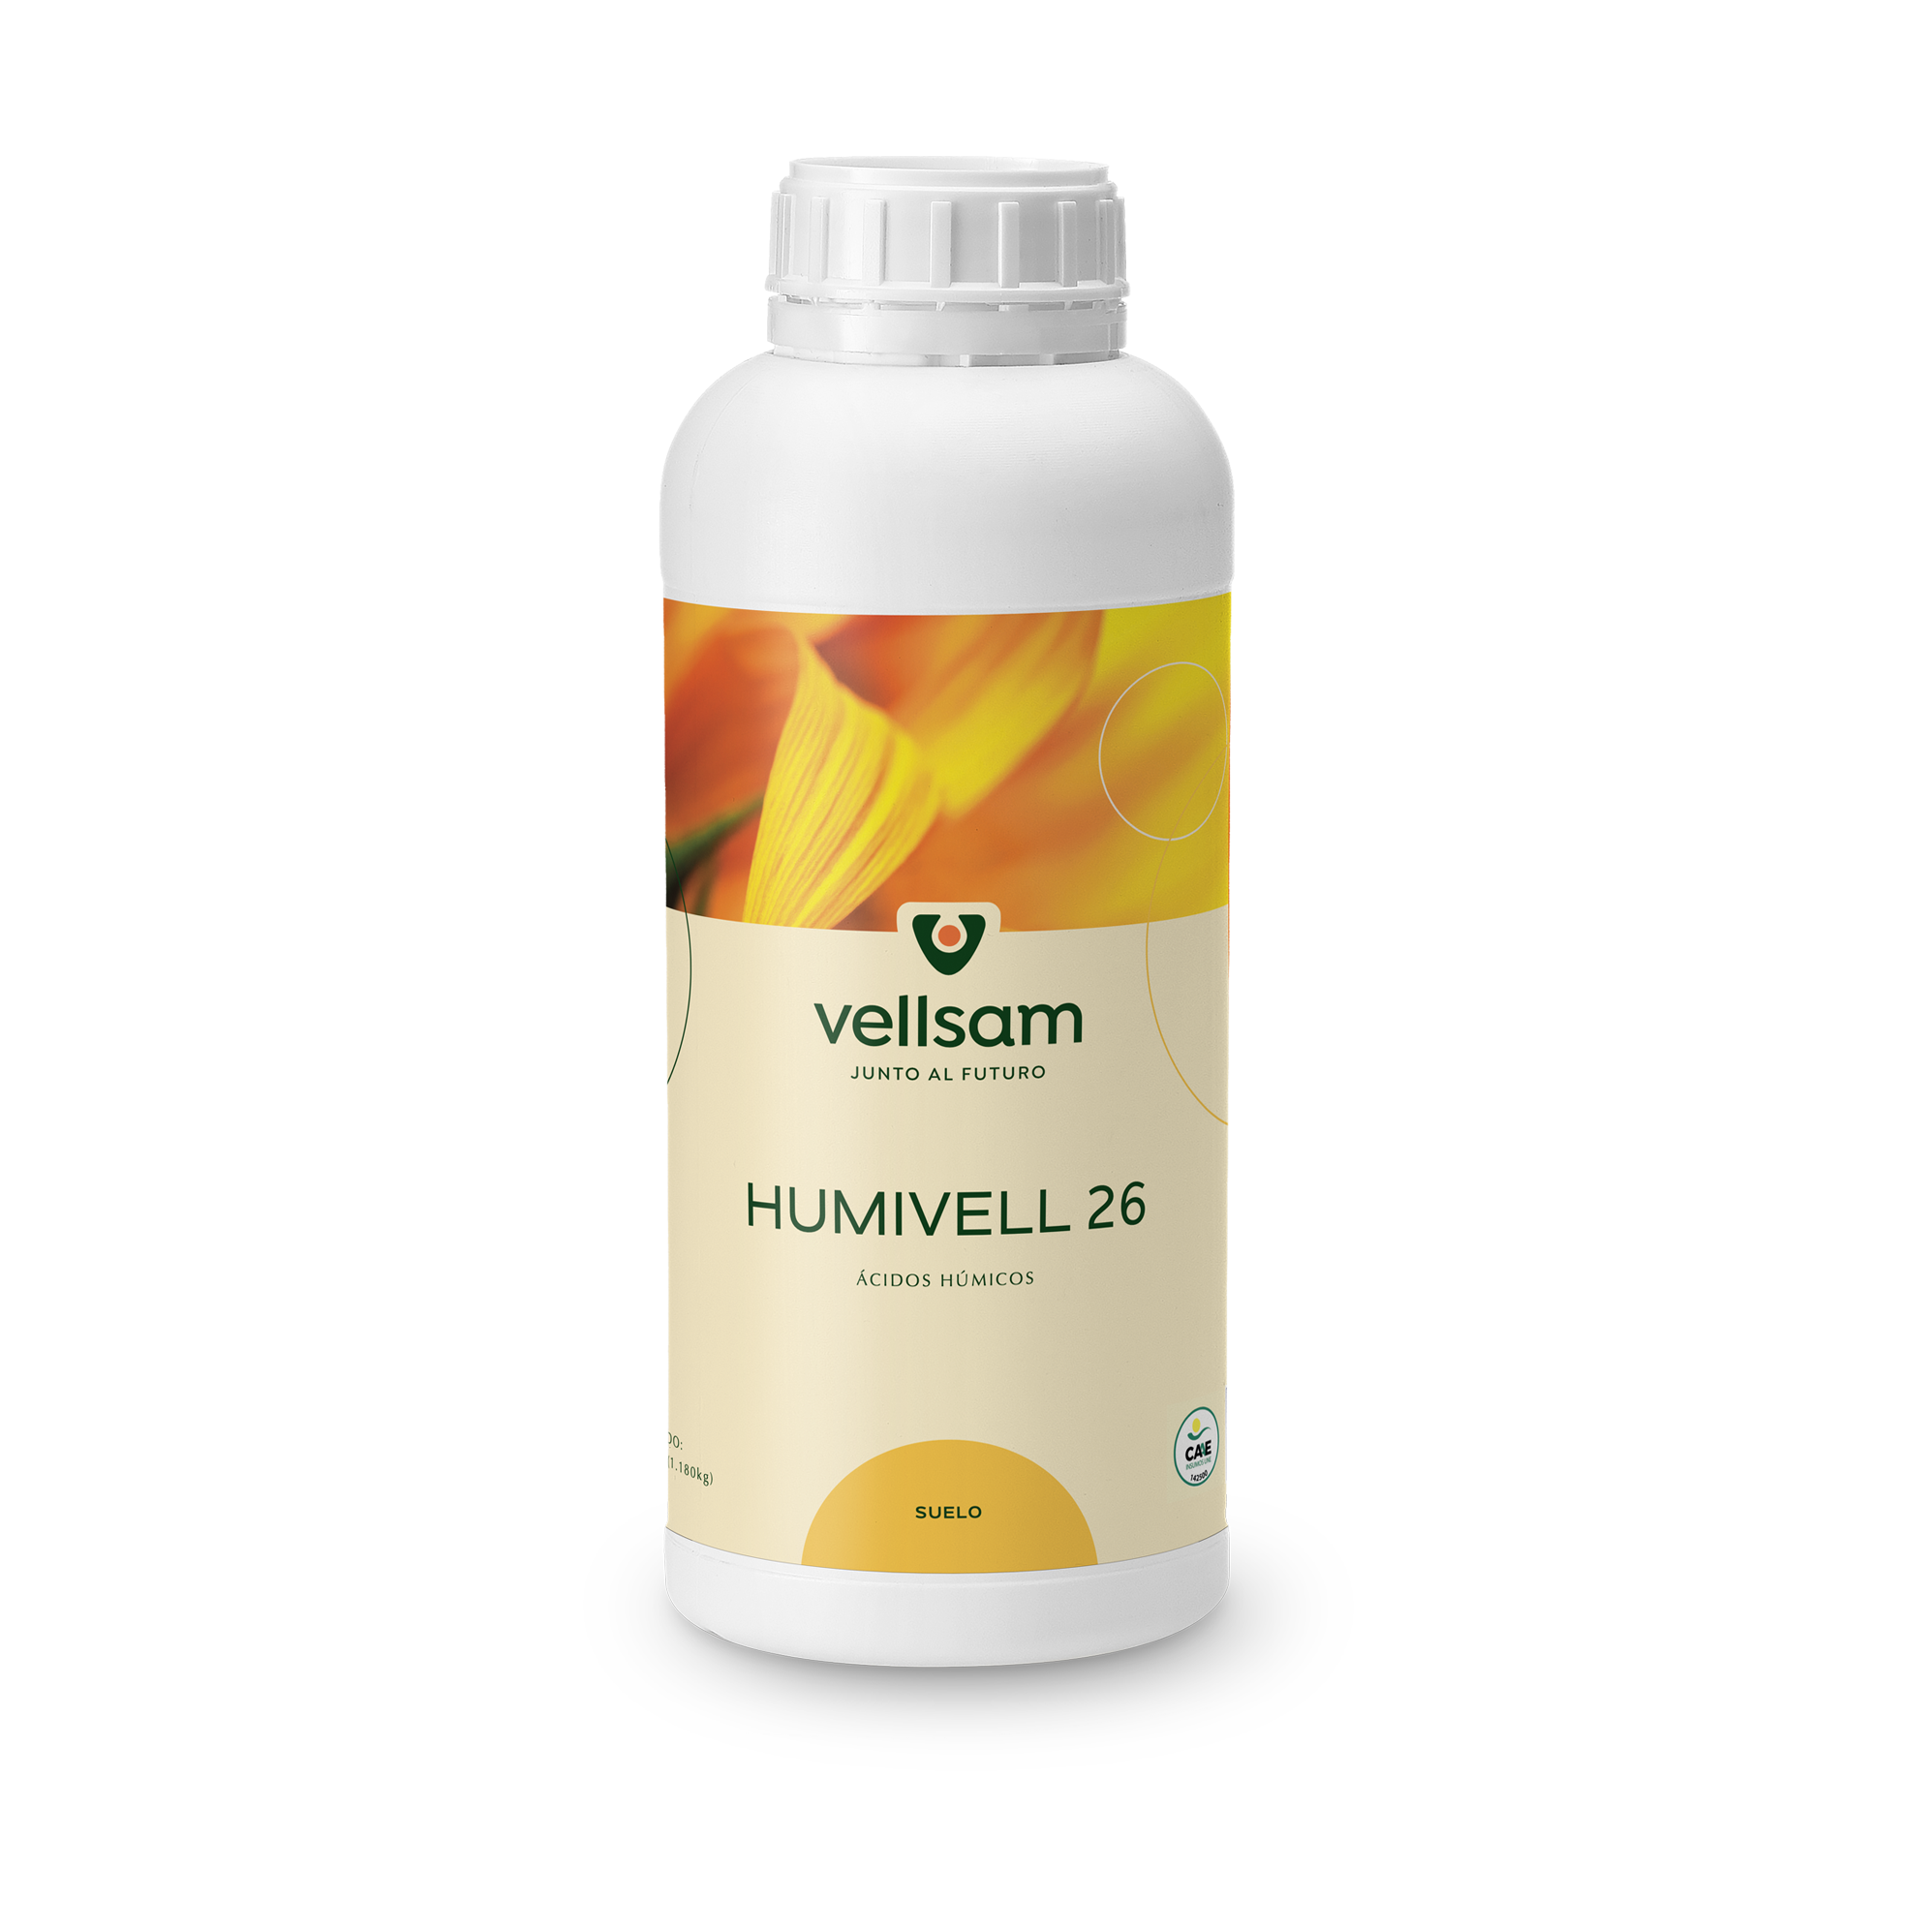 Humivell 26 - Течно органско ђубриво са високим садржајем хуминских киселина.